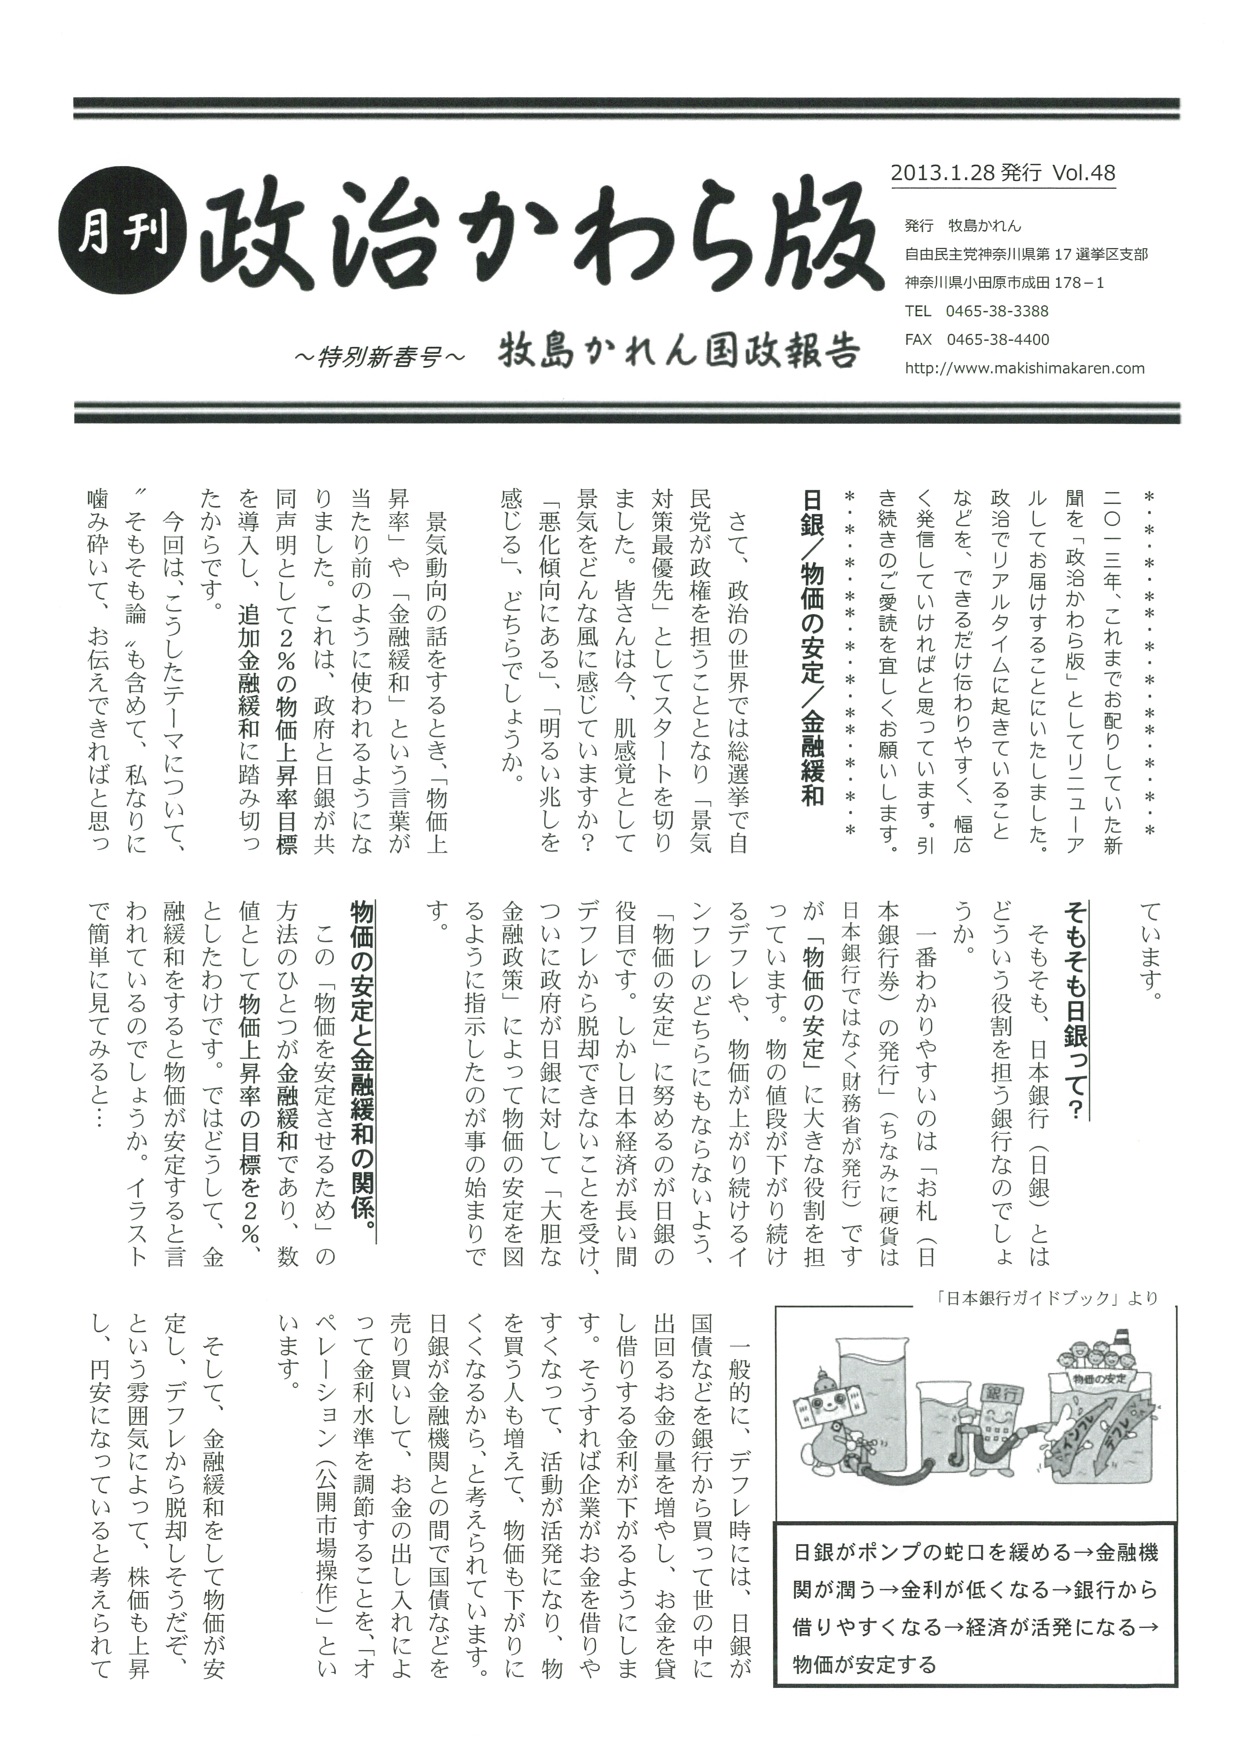 牧島かれん 政治かわら版 特別新春号  Vol.48